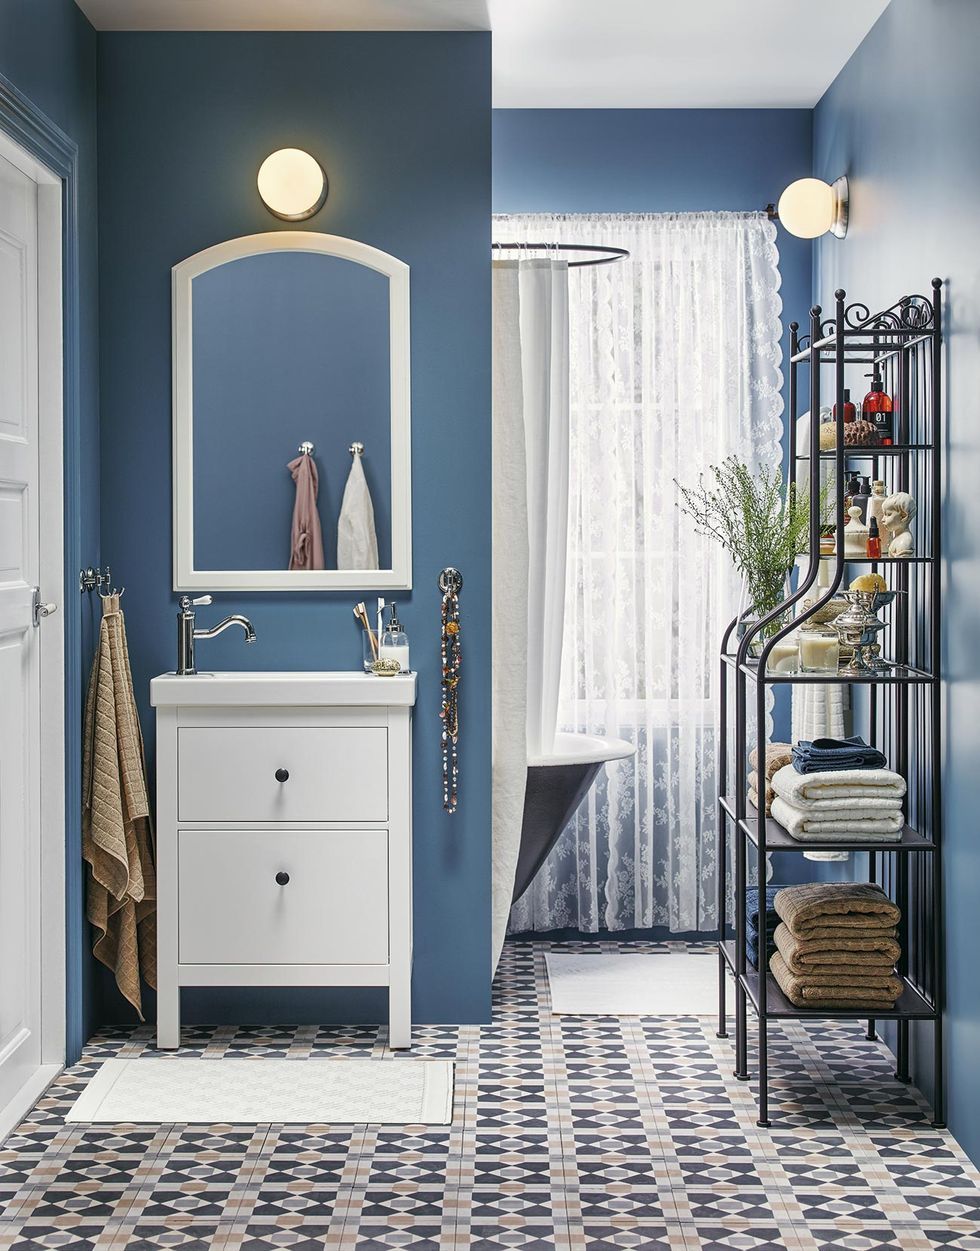 Un baño en blanco y azul con banco de obra - Vintage & Chic. Pequeñas  historias de decoración